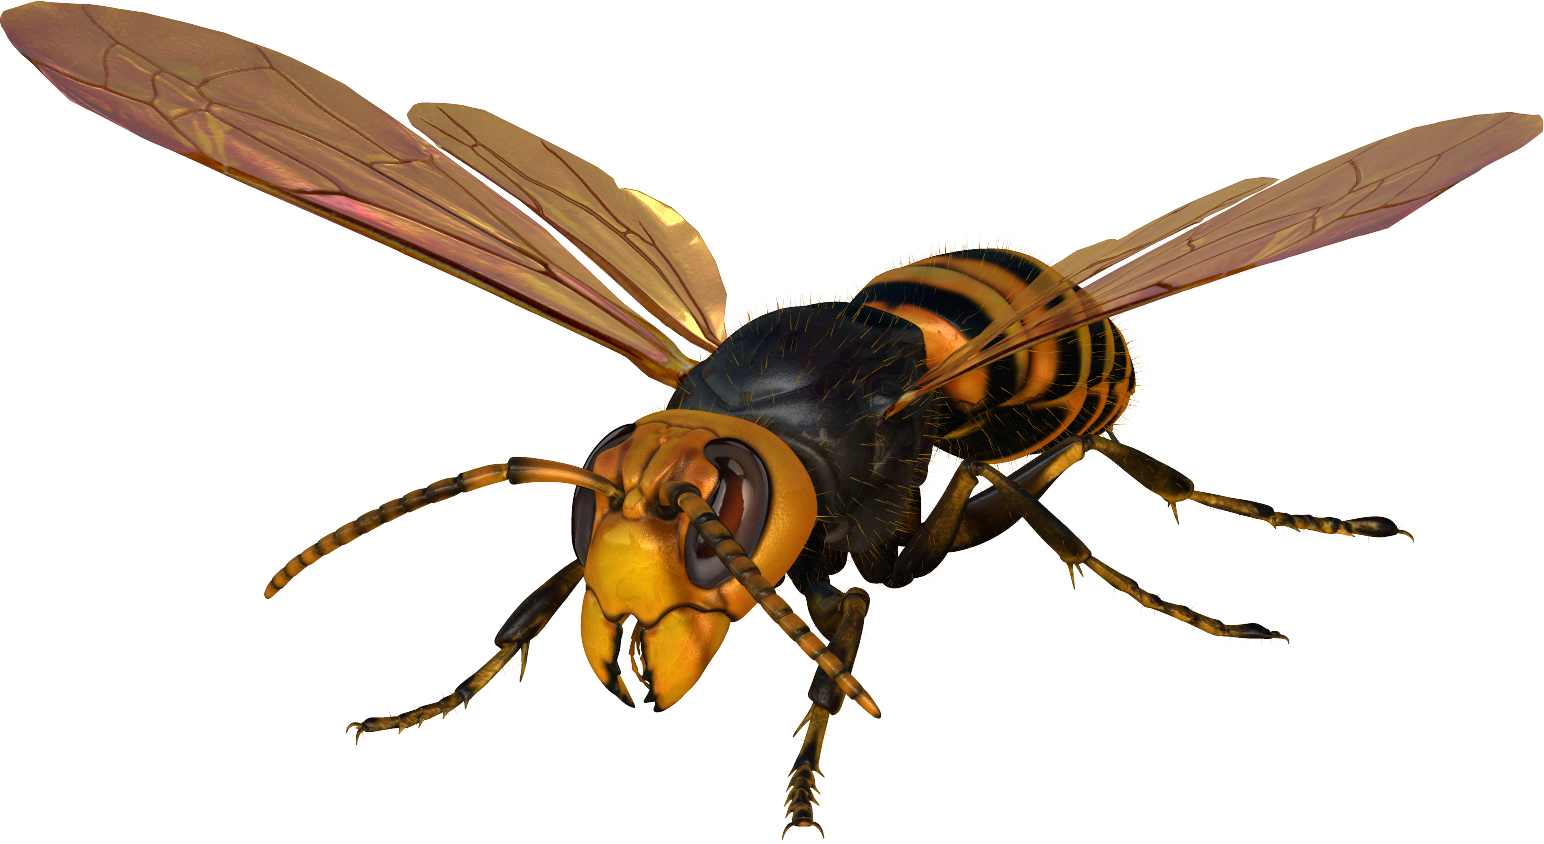 世界の昆虫採集2 昆虫王国 仮 ハチのなかま Boycraft Blog